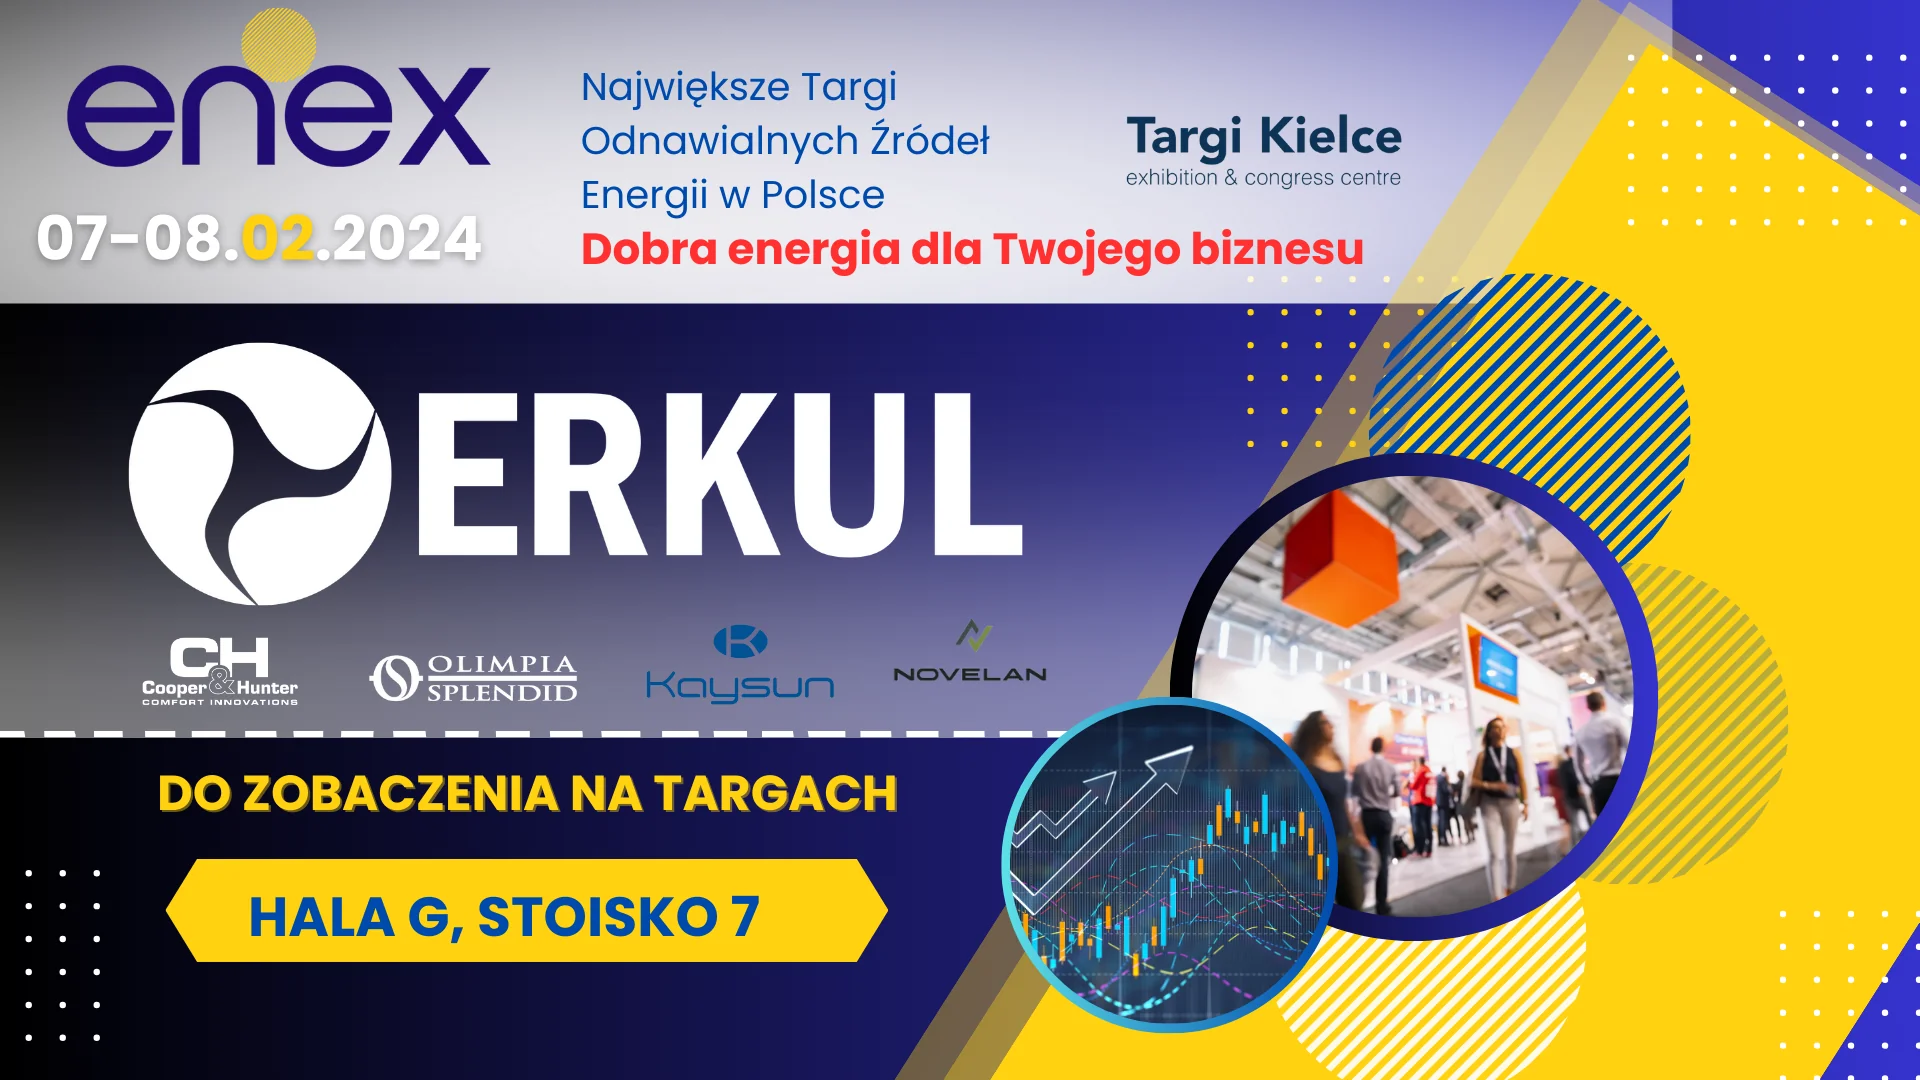 ERKUL – Importer HVAC zaprasza na Targi Enex / 07-08 luty 2024. Do zobaczenia w Kielcach